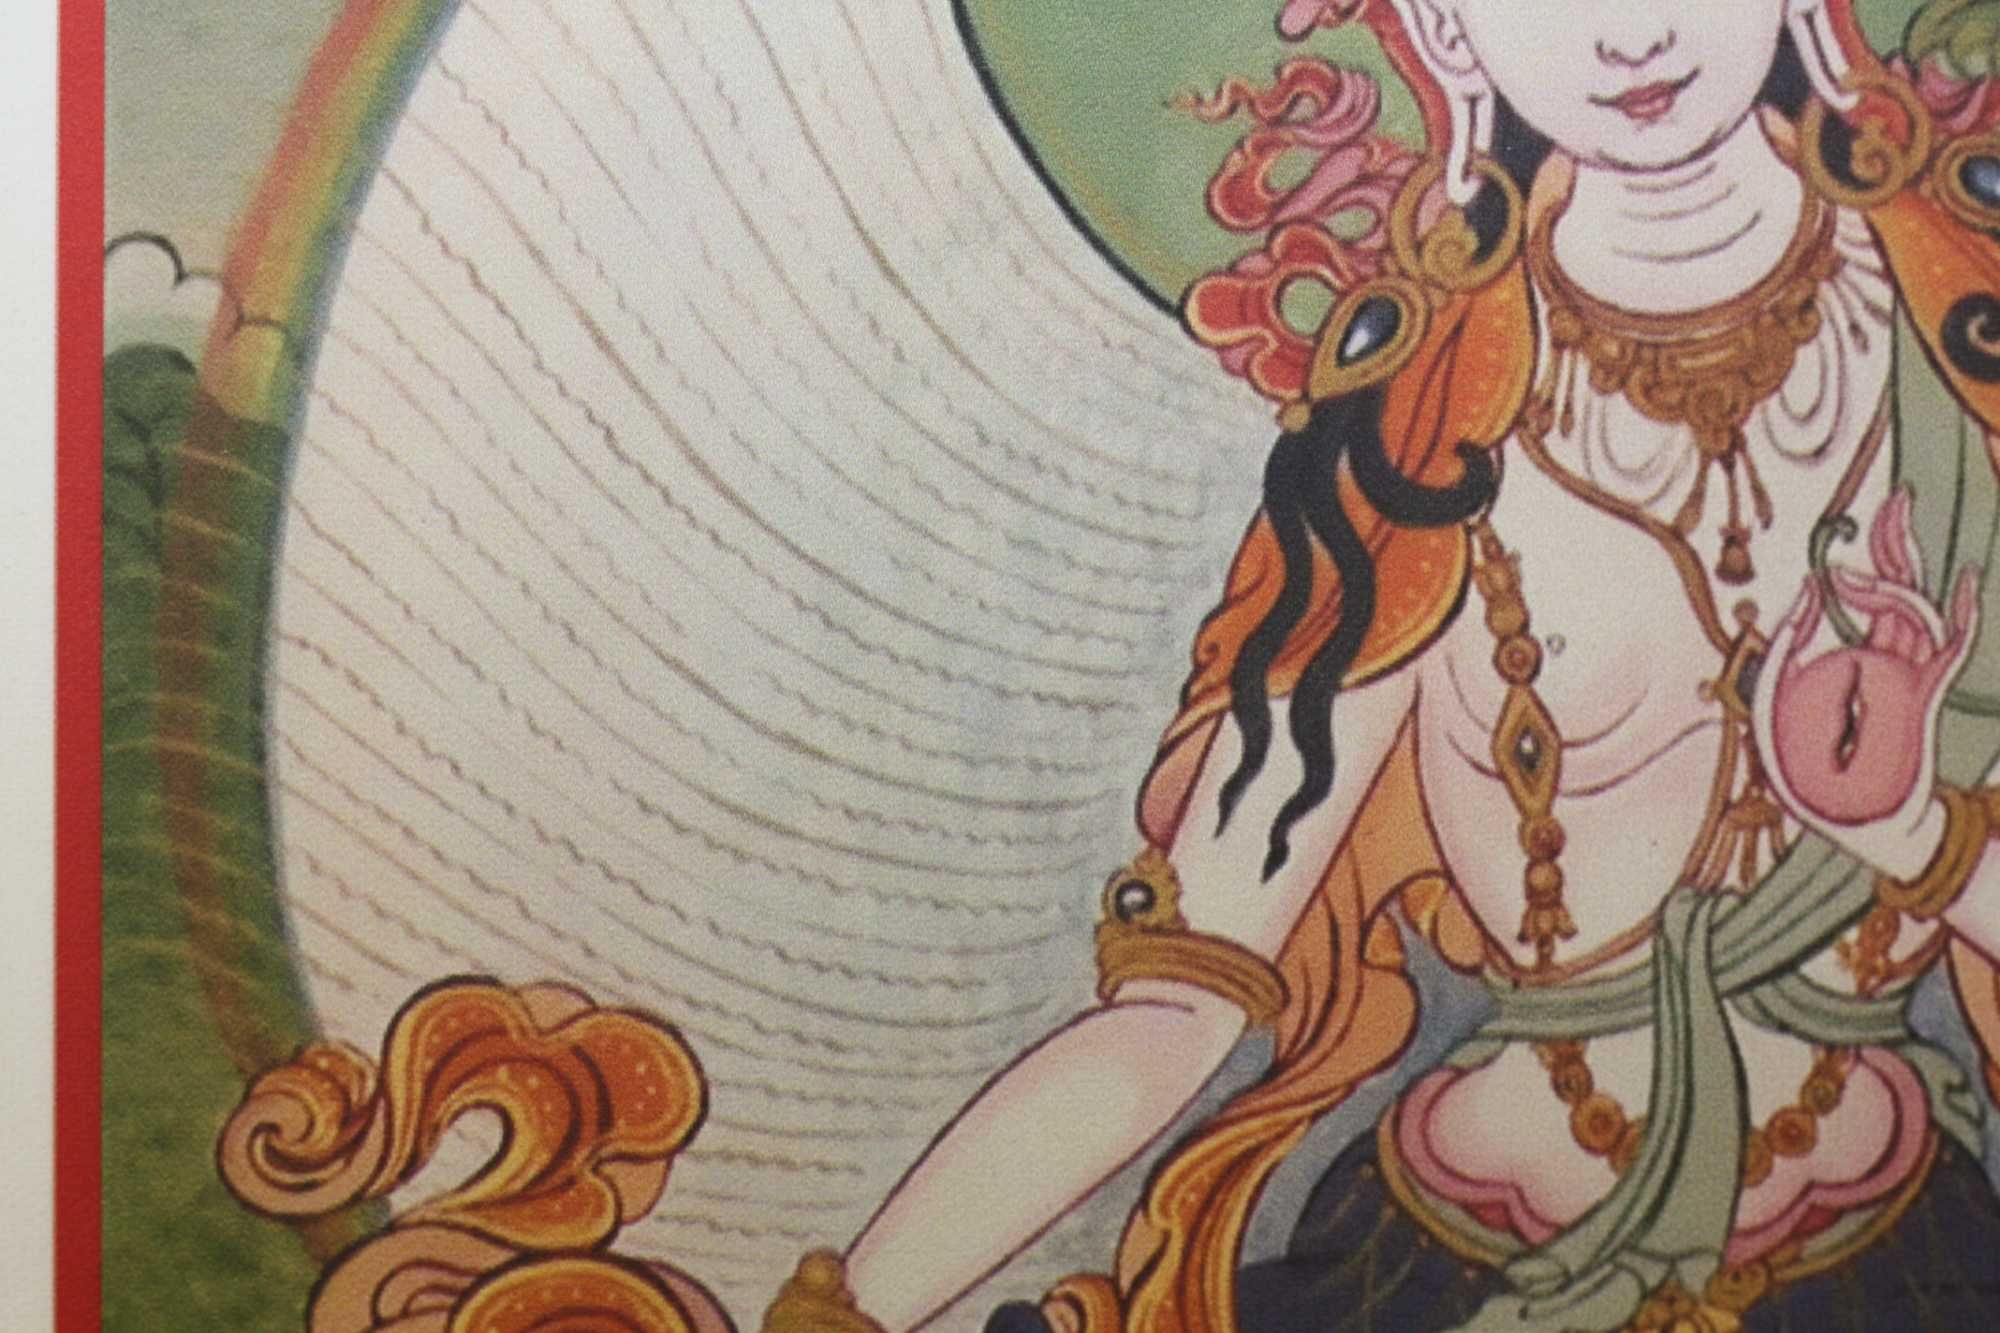 Буддійська тангка Біла Тара
Надруковано на натуральному полотні